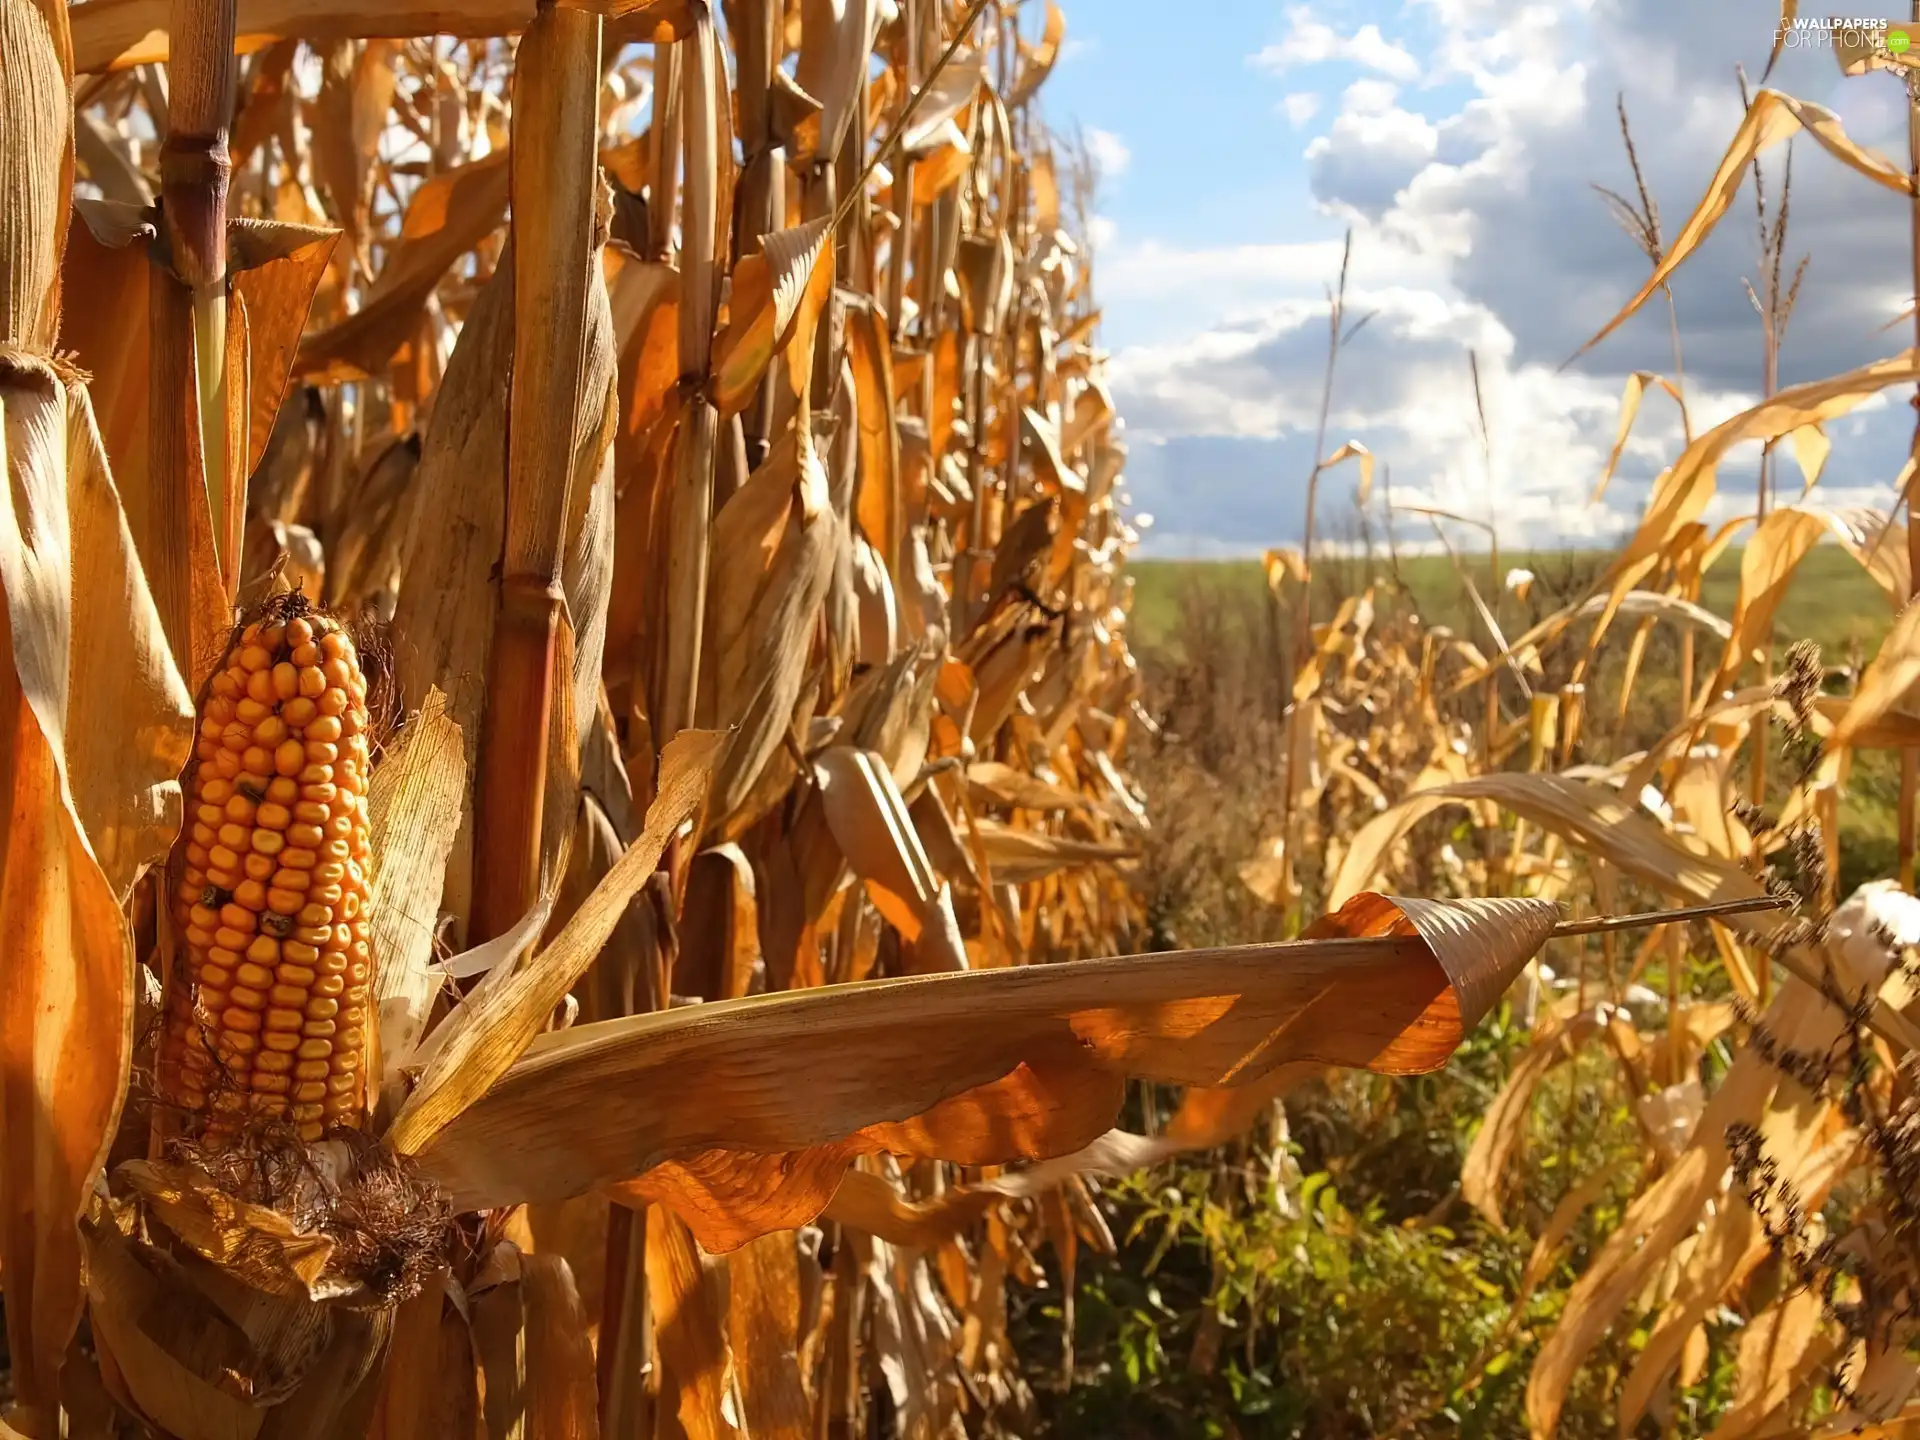 Field, corn-cob